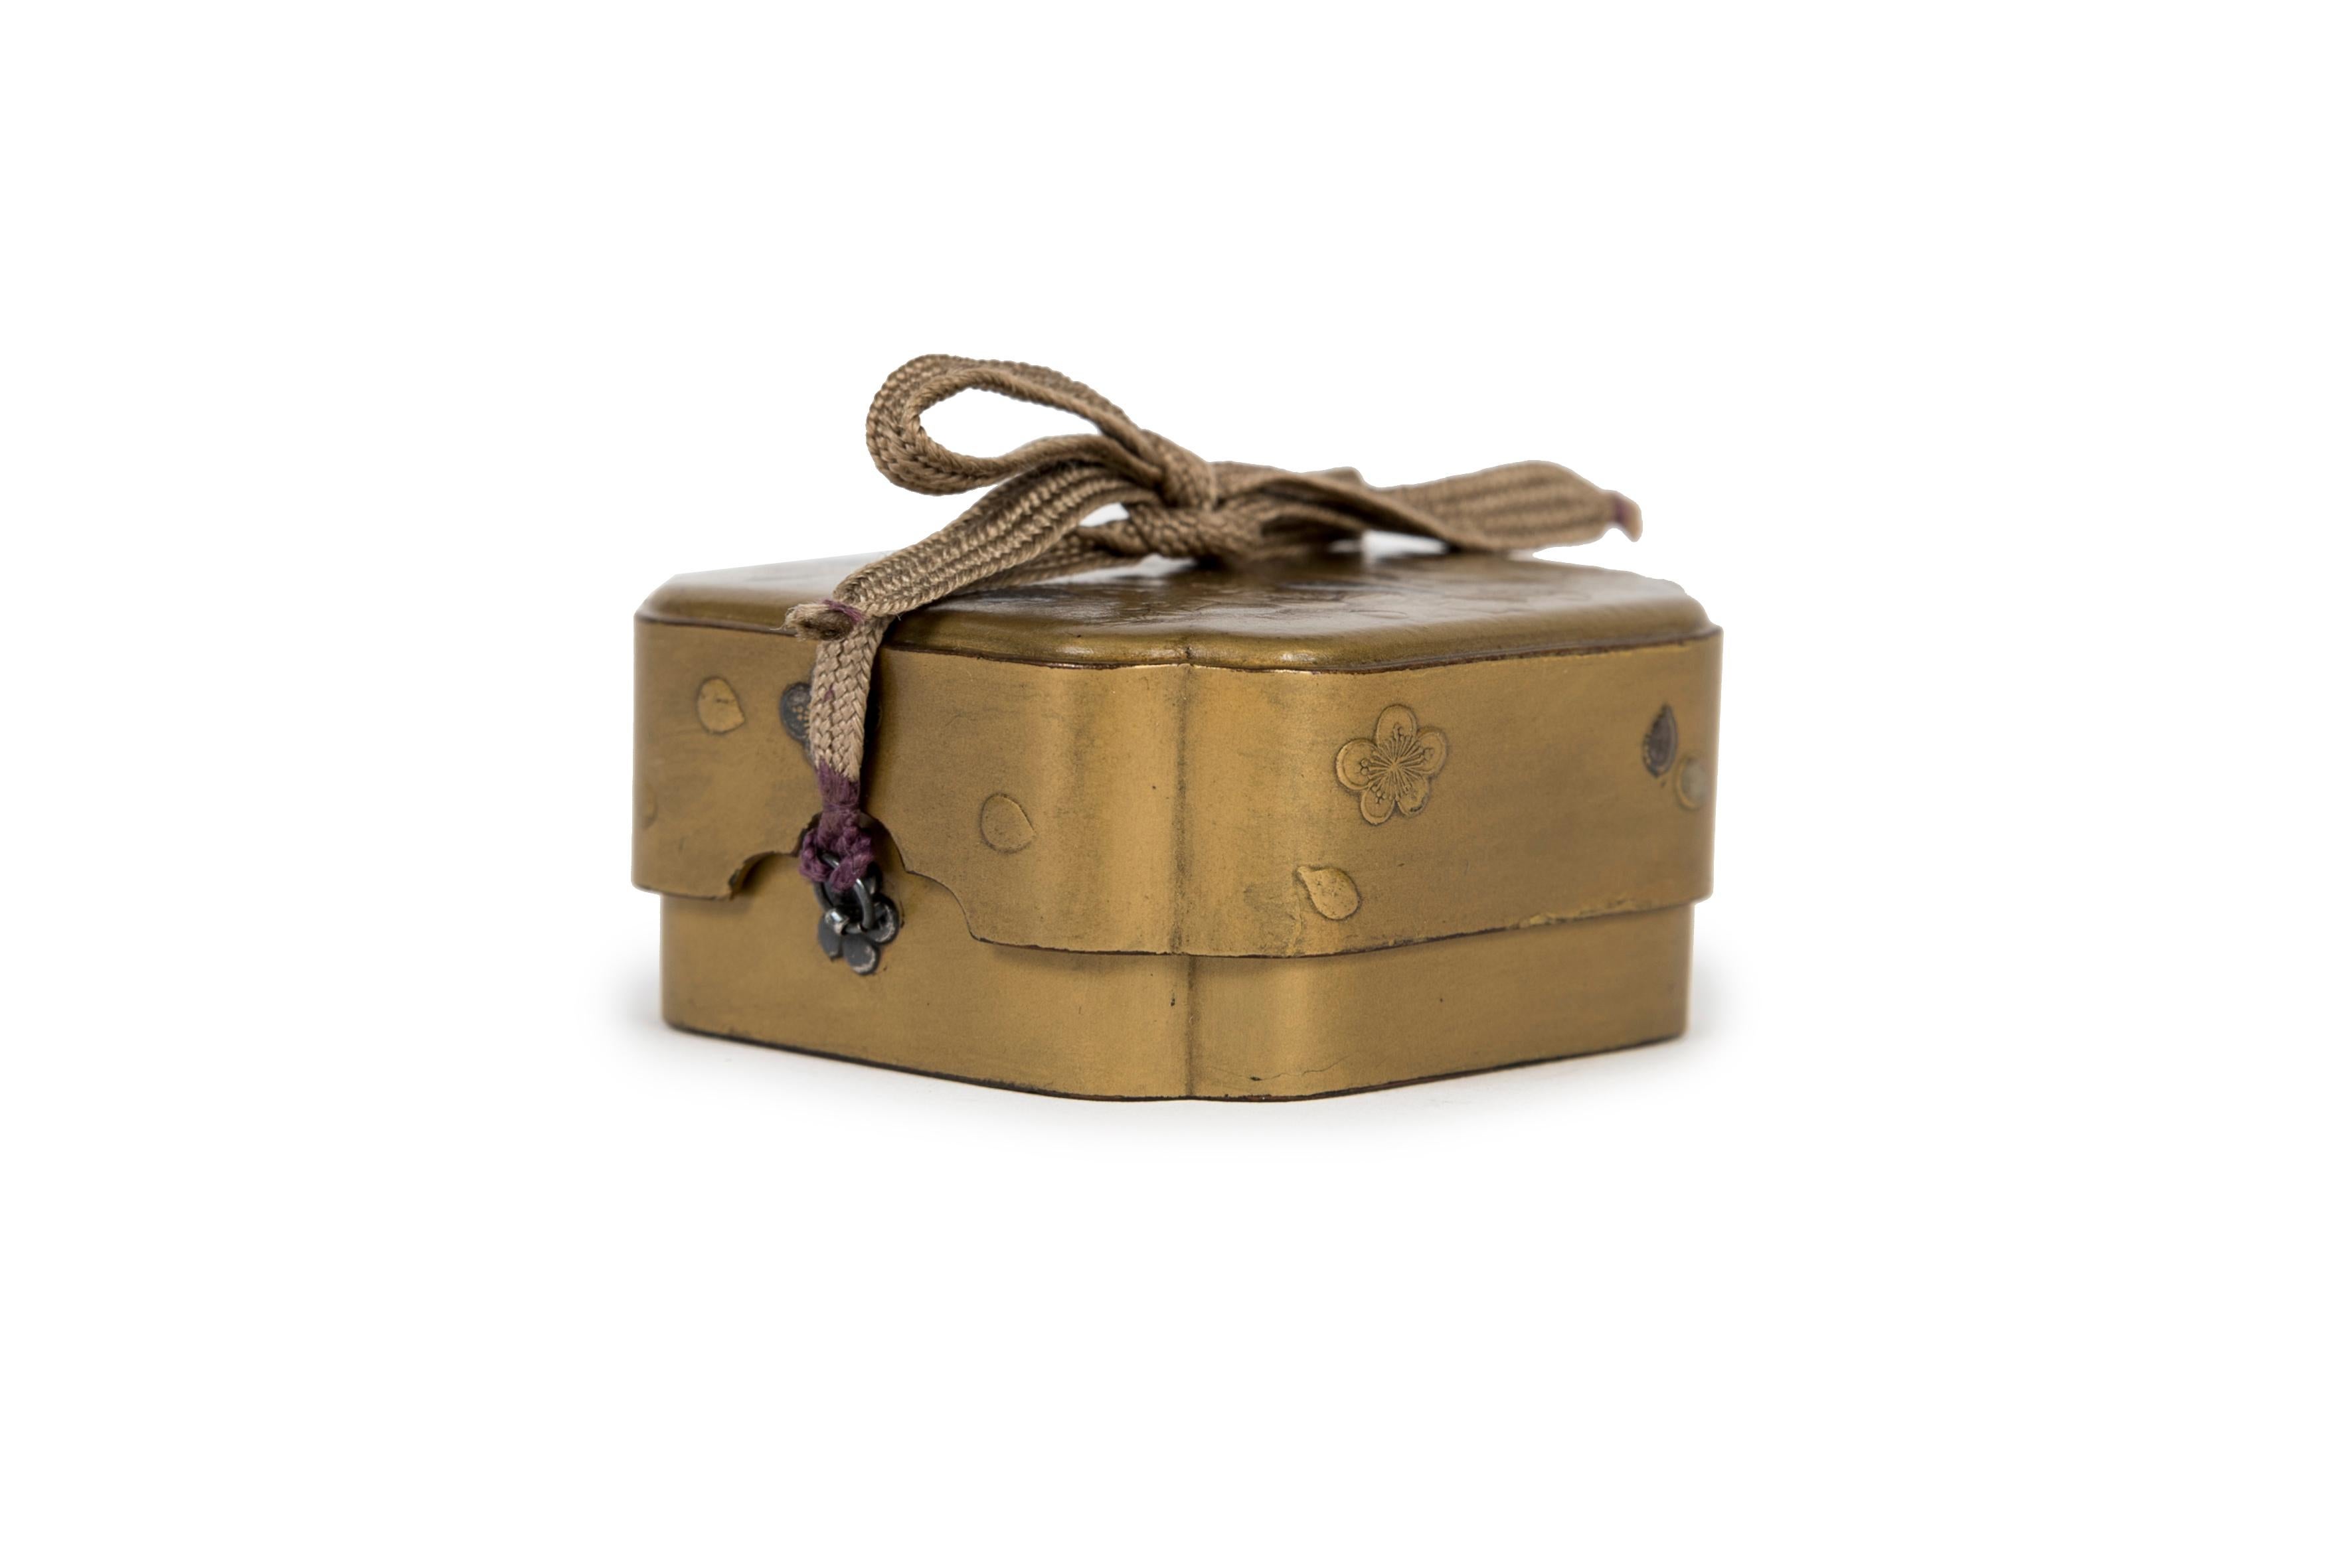 Viereckige Kobako-Schachtel mit Blumendekor in Gold und blauem Lack mit Aogai-Einlage. Deckel und Seiten in Fundame-Lack, Unterseite und Innenseite in Nashi-ji-Lack. Im Inneren befindet sich ein herausnehmbares Tablett mit goldenen Fundamenträndern.